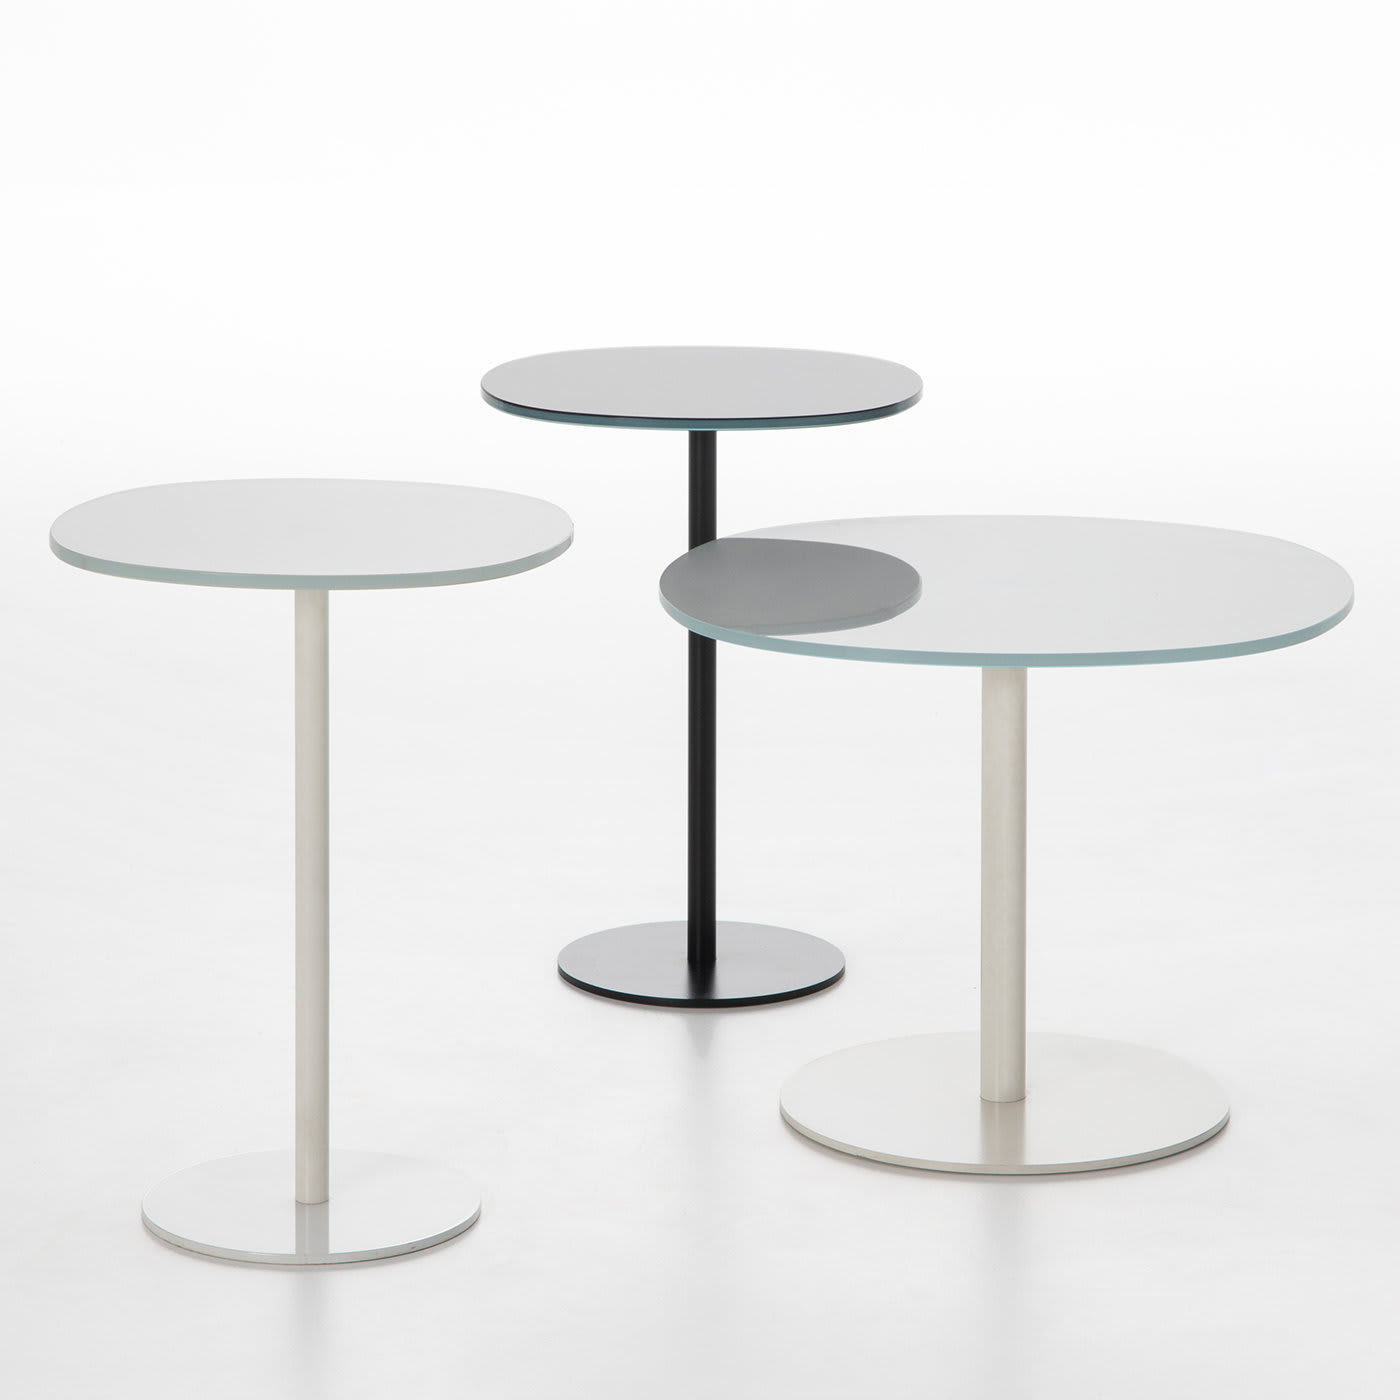 Solenoide Black Tall Side Table by Piero Lissoni - Tecno Spa